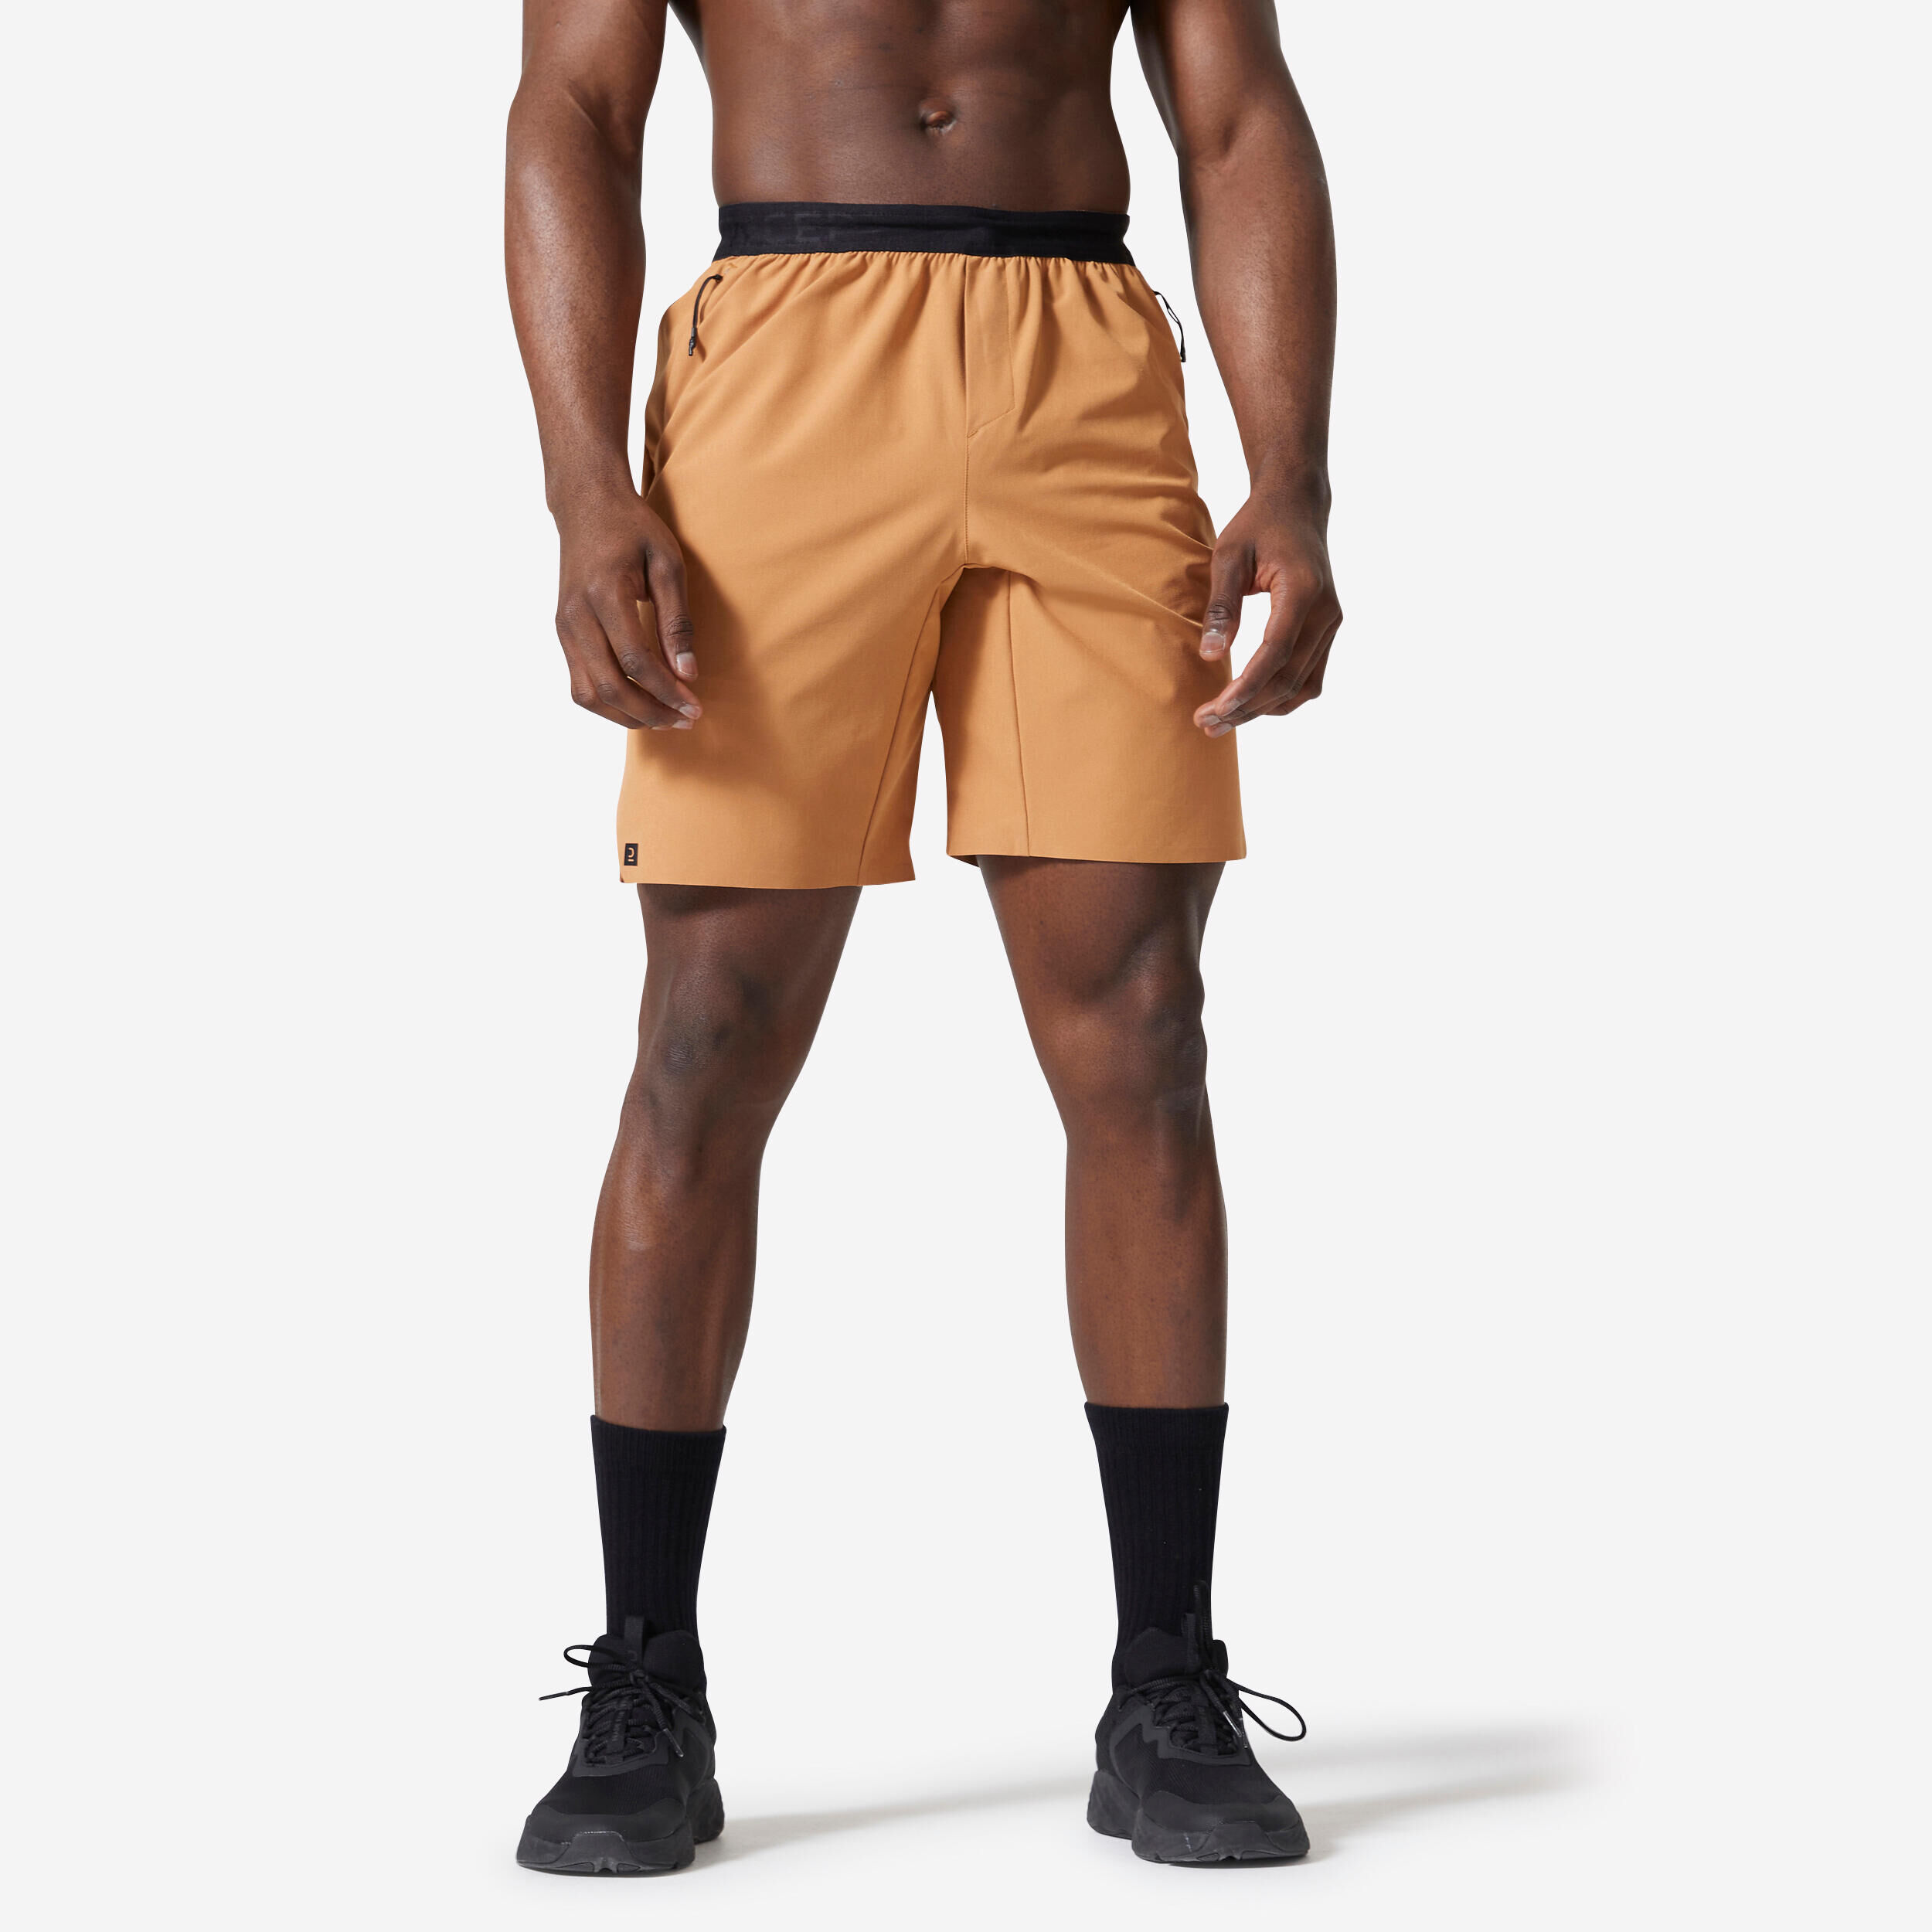 DOMYOS Men's Breathable Performance Cross Training Shorts with Zipped Pockets Hazelnut